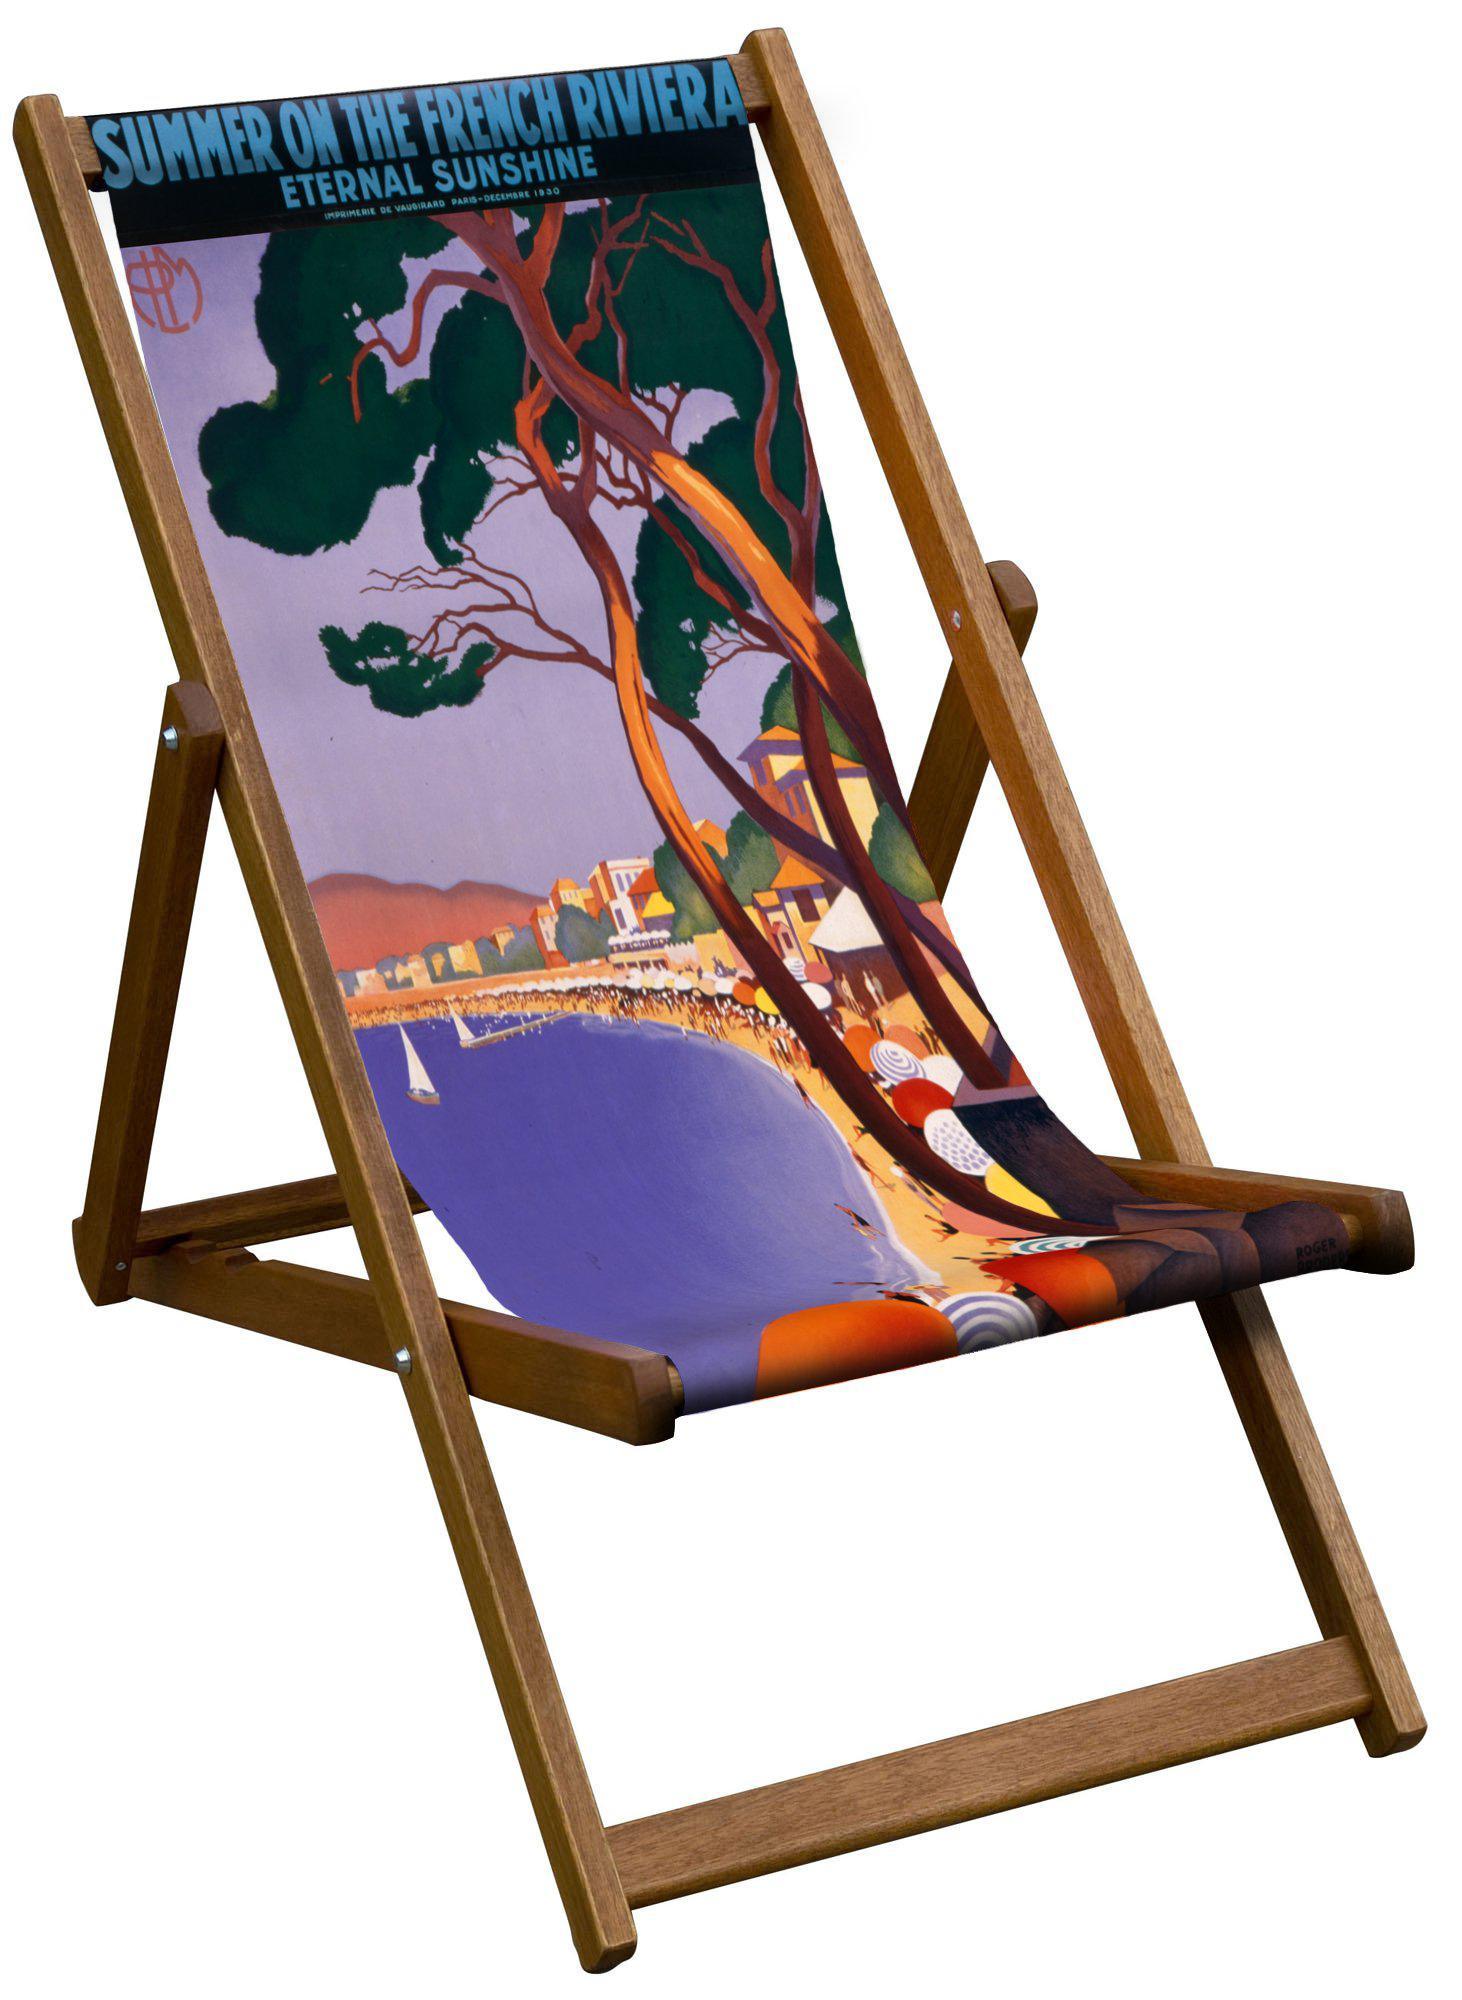 Bystander Summer French Rivera - Art Print Travel Deckchair